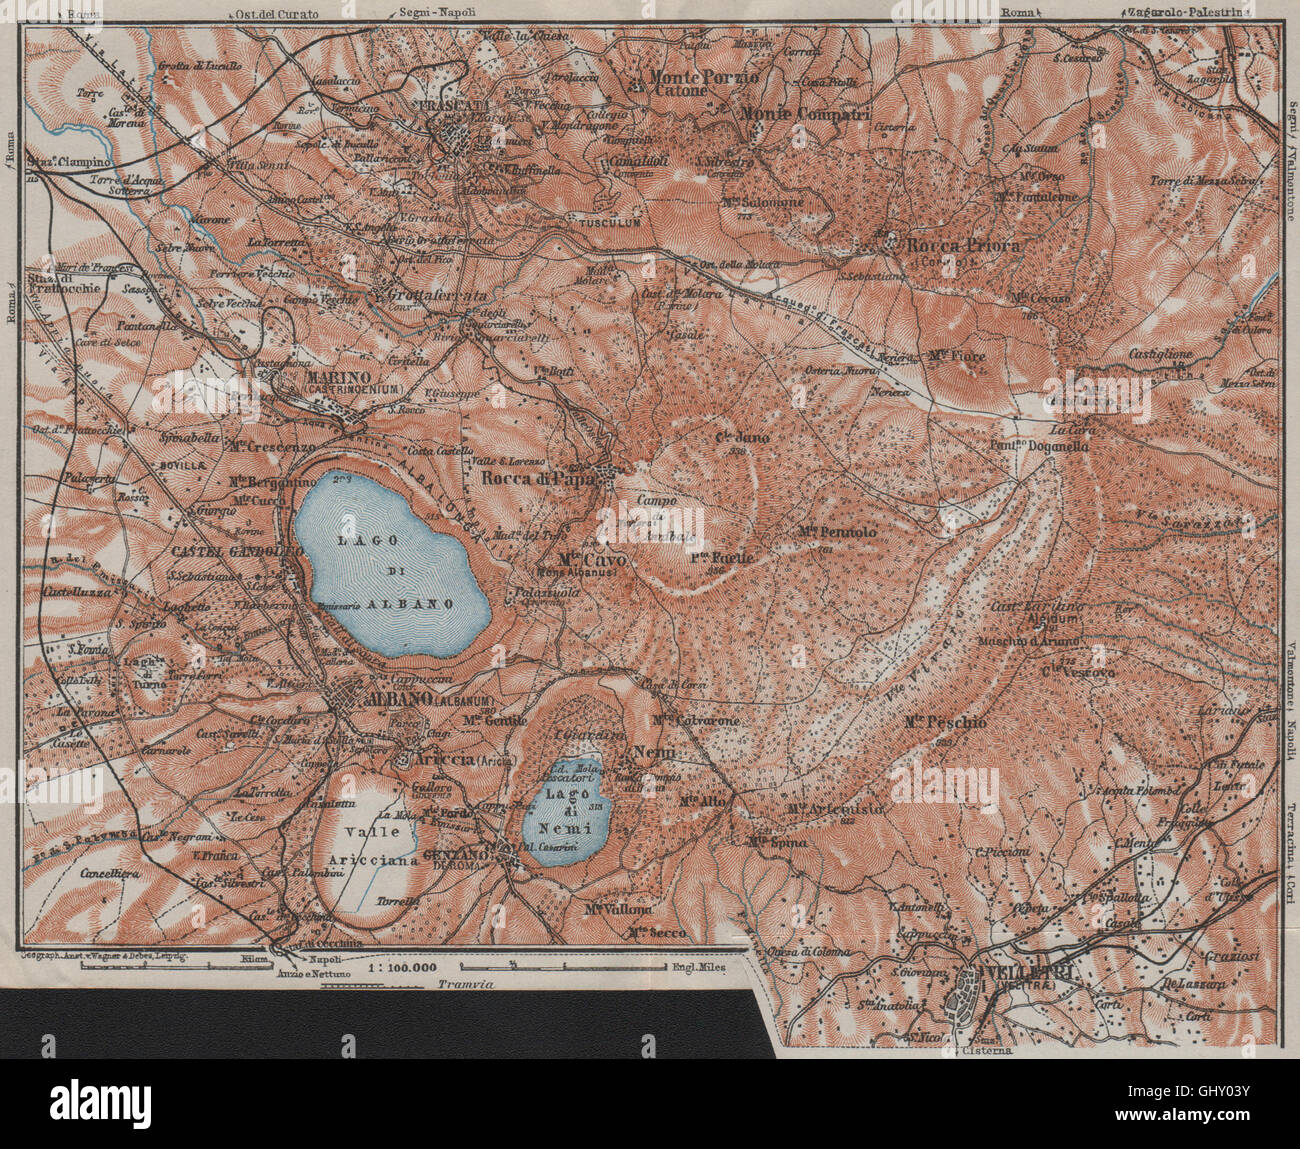 L'ALBAN HILLS. Colli Albani. Monte Cavo. Topo-map. Frascati, Velletri, 1909 Banque D'Images